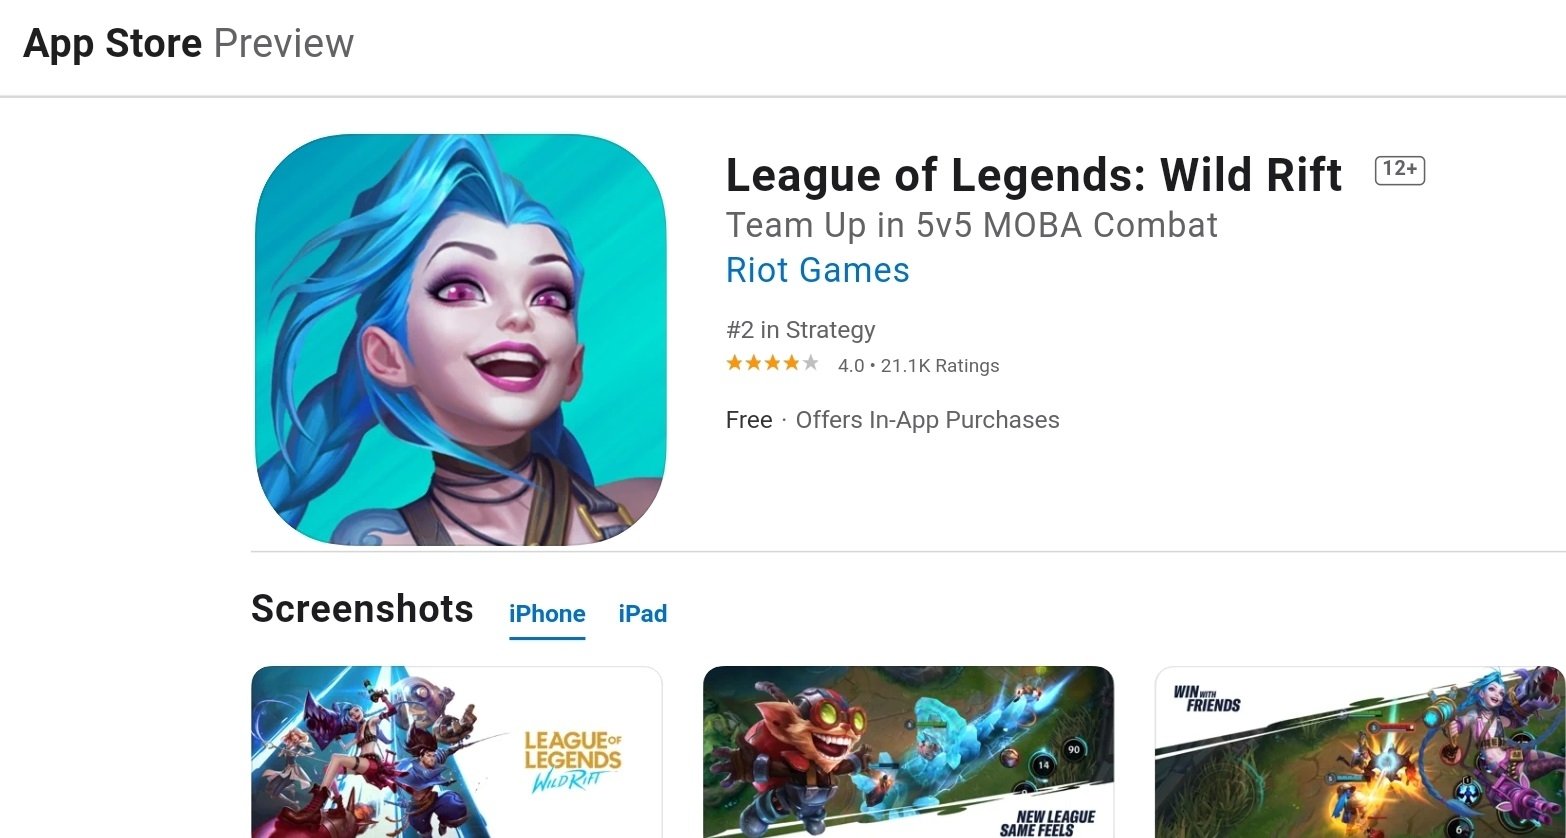 League of Legends Wild Rift App Store